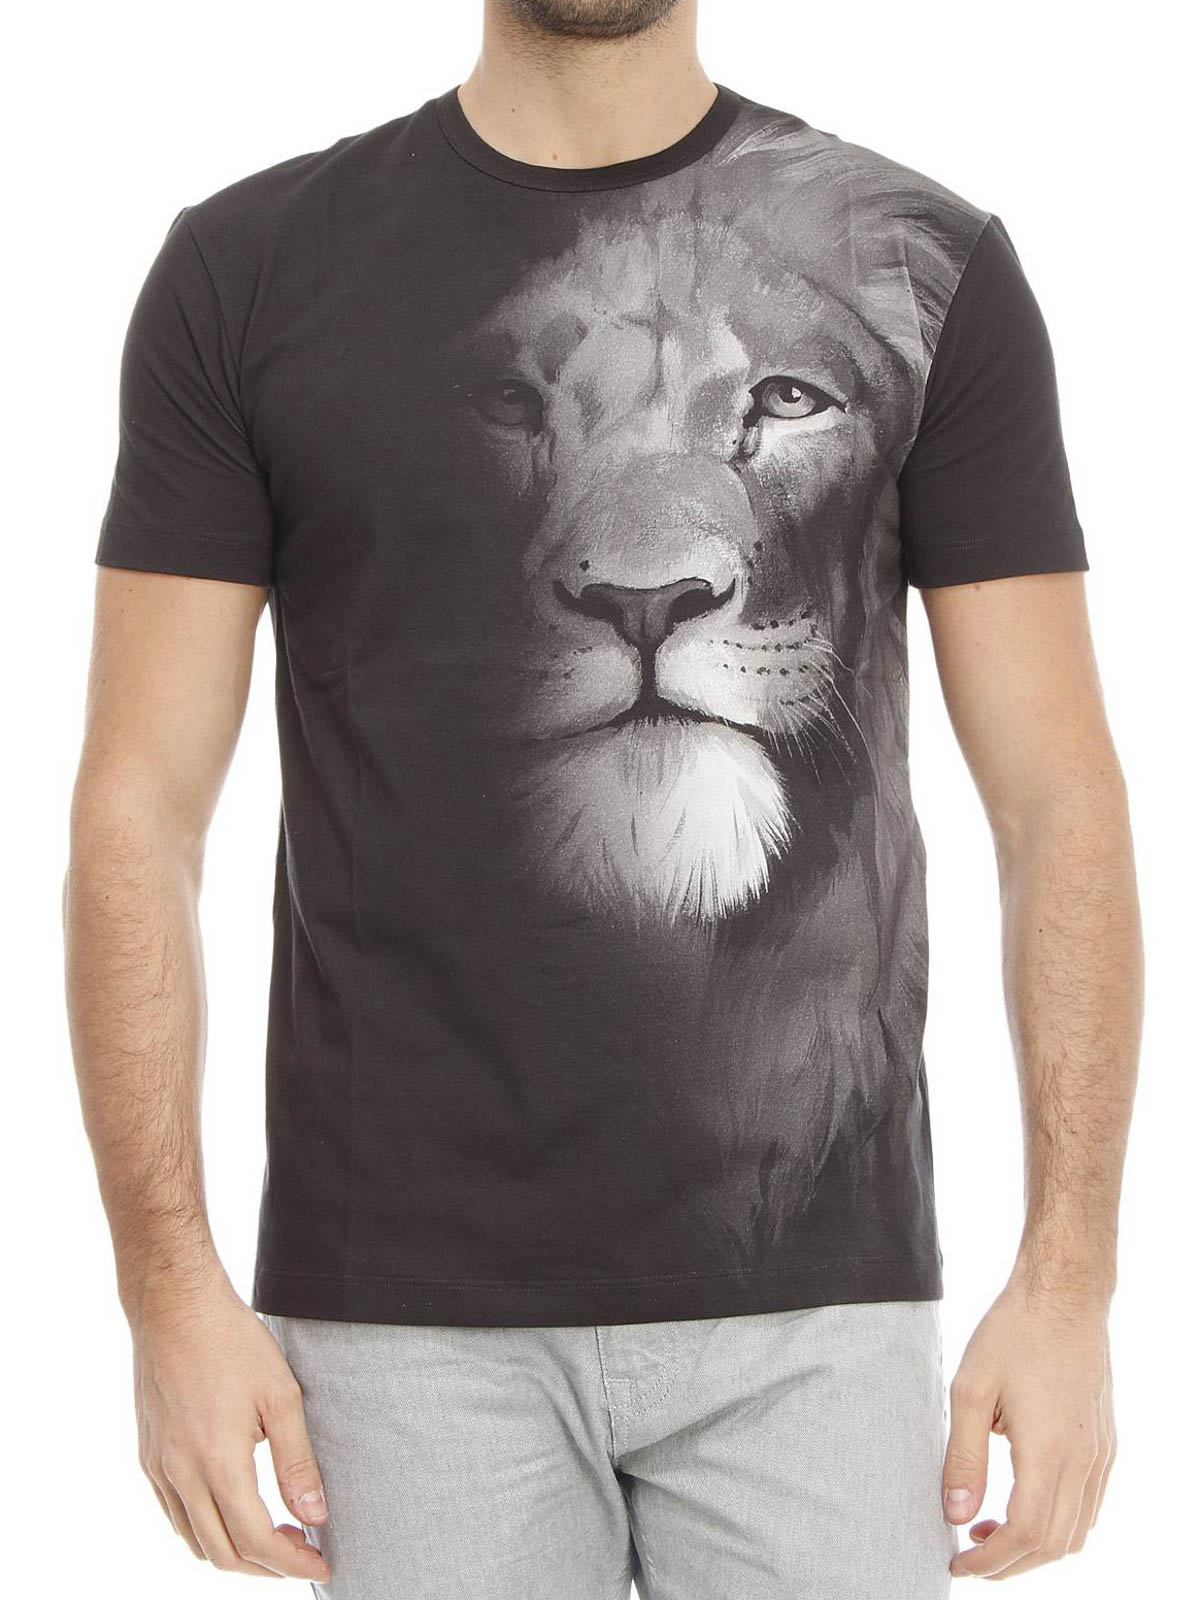 versace t shirt lion